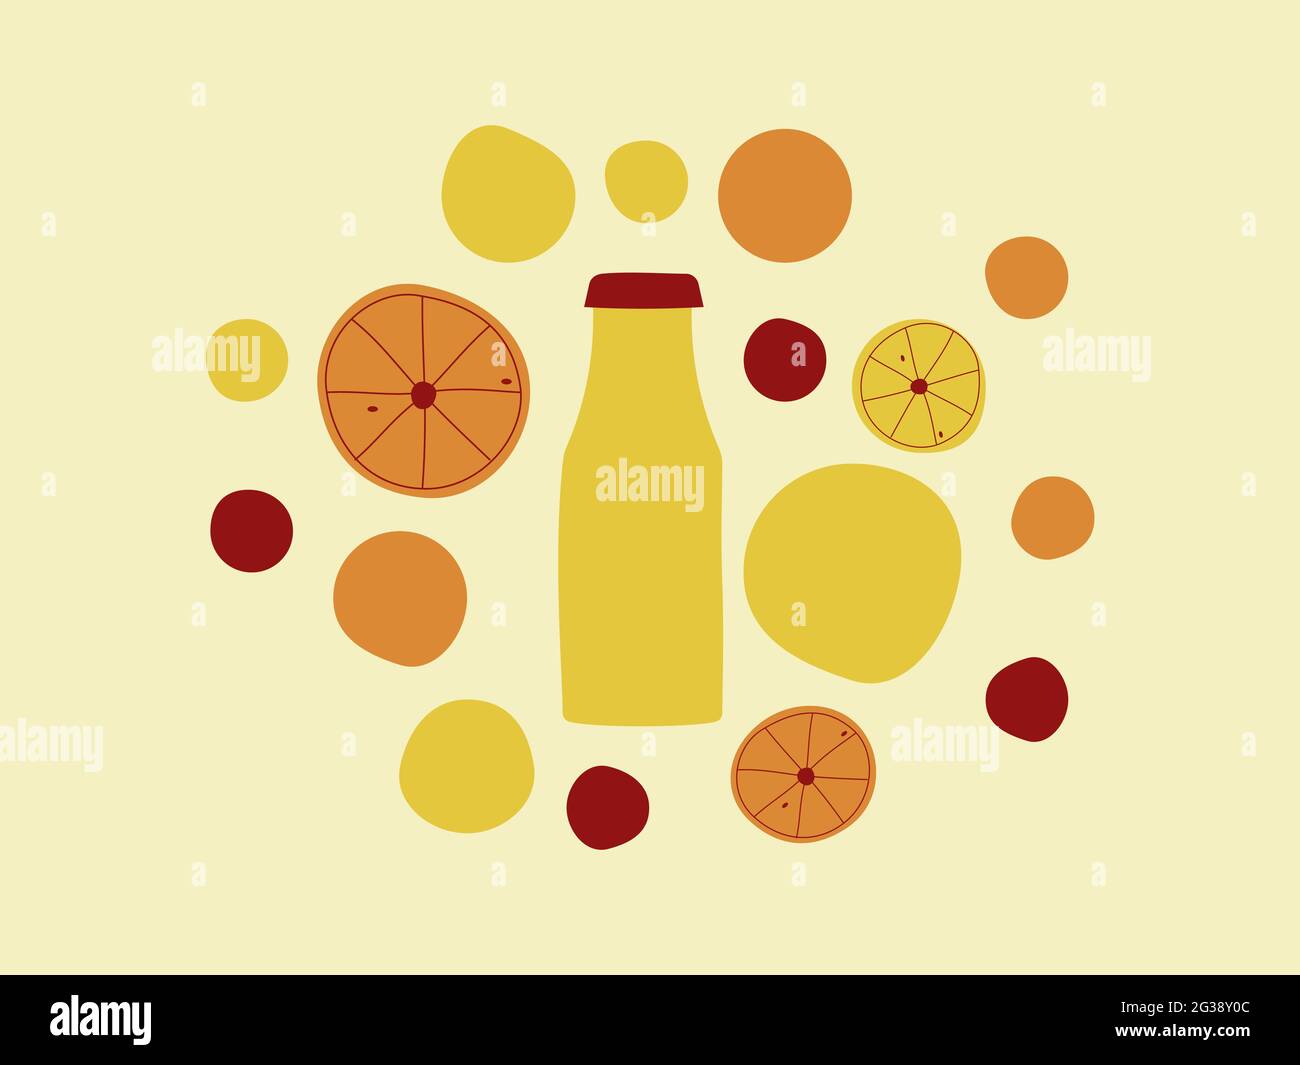 Farbenfrohe Zitrusfrüchte im Hintergrund. Flasche mit Zitrusfrüchten und Saft. Geometrische Formen, die Zitrone, Orange, Grapefruit, Clementine darstellen. Flaches Design. Stock Vektor